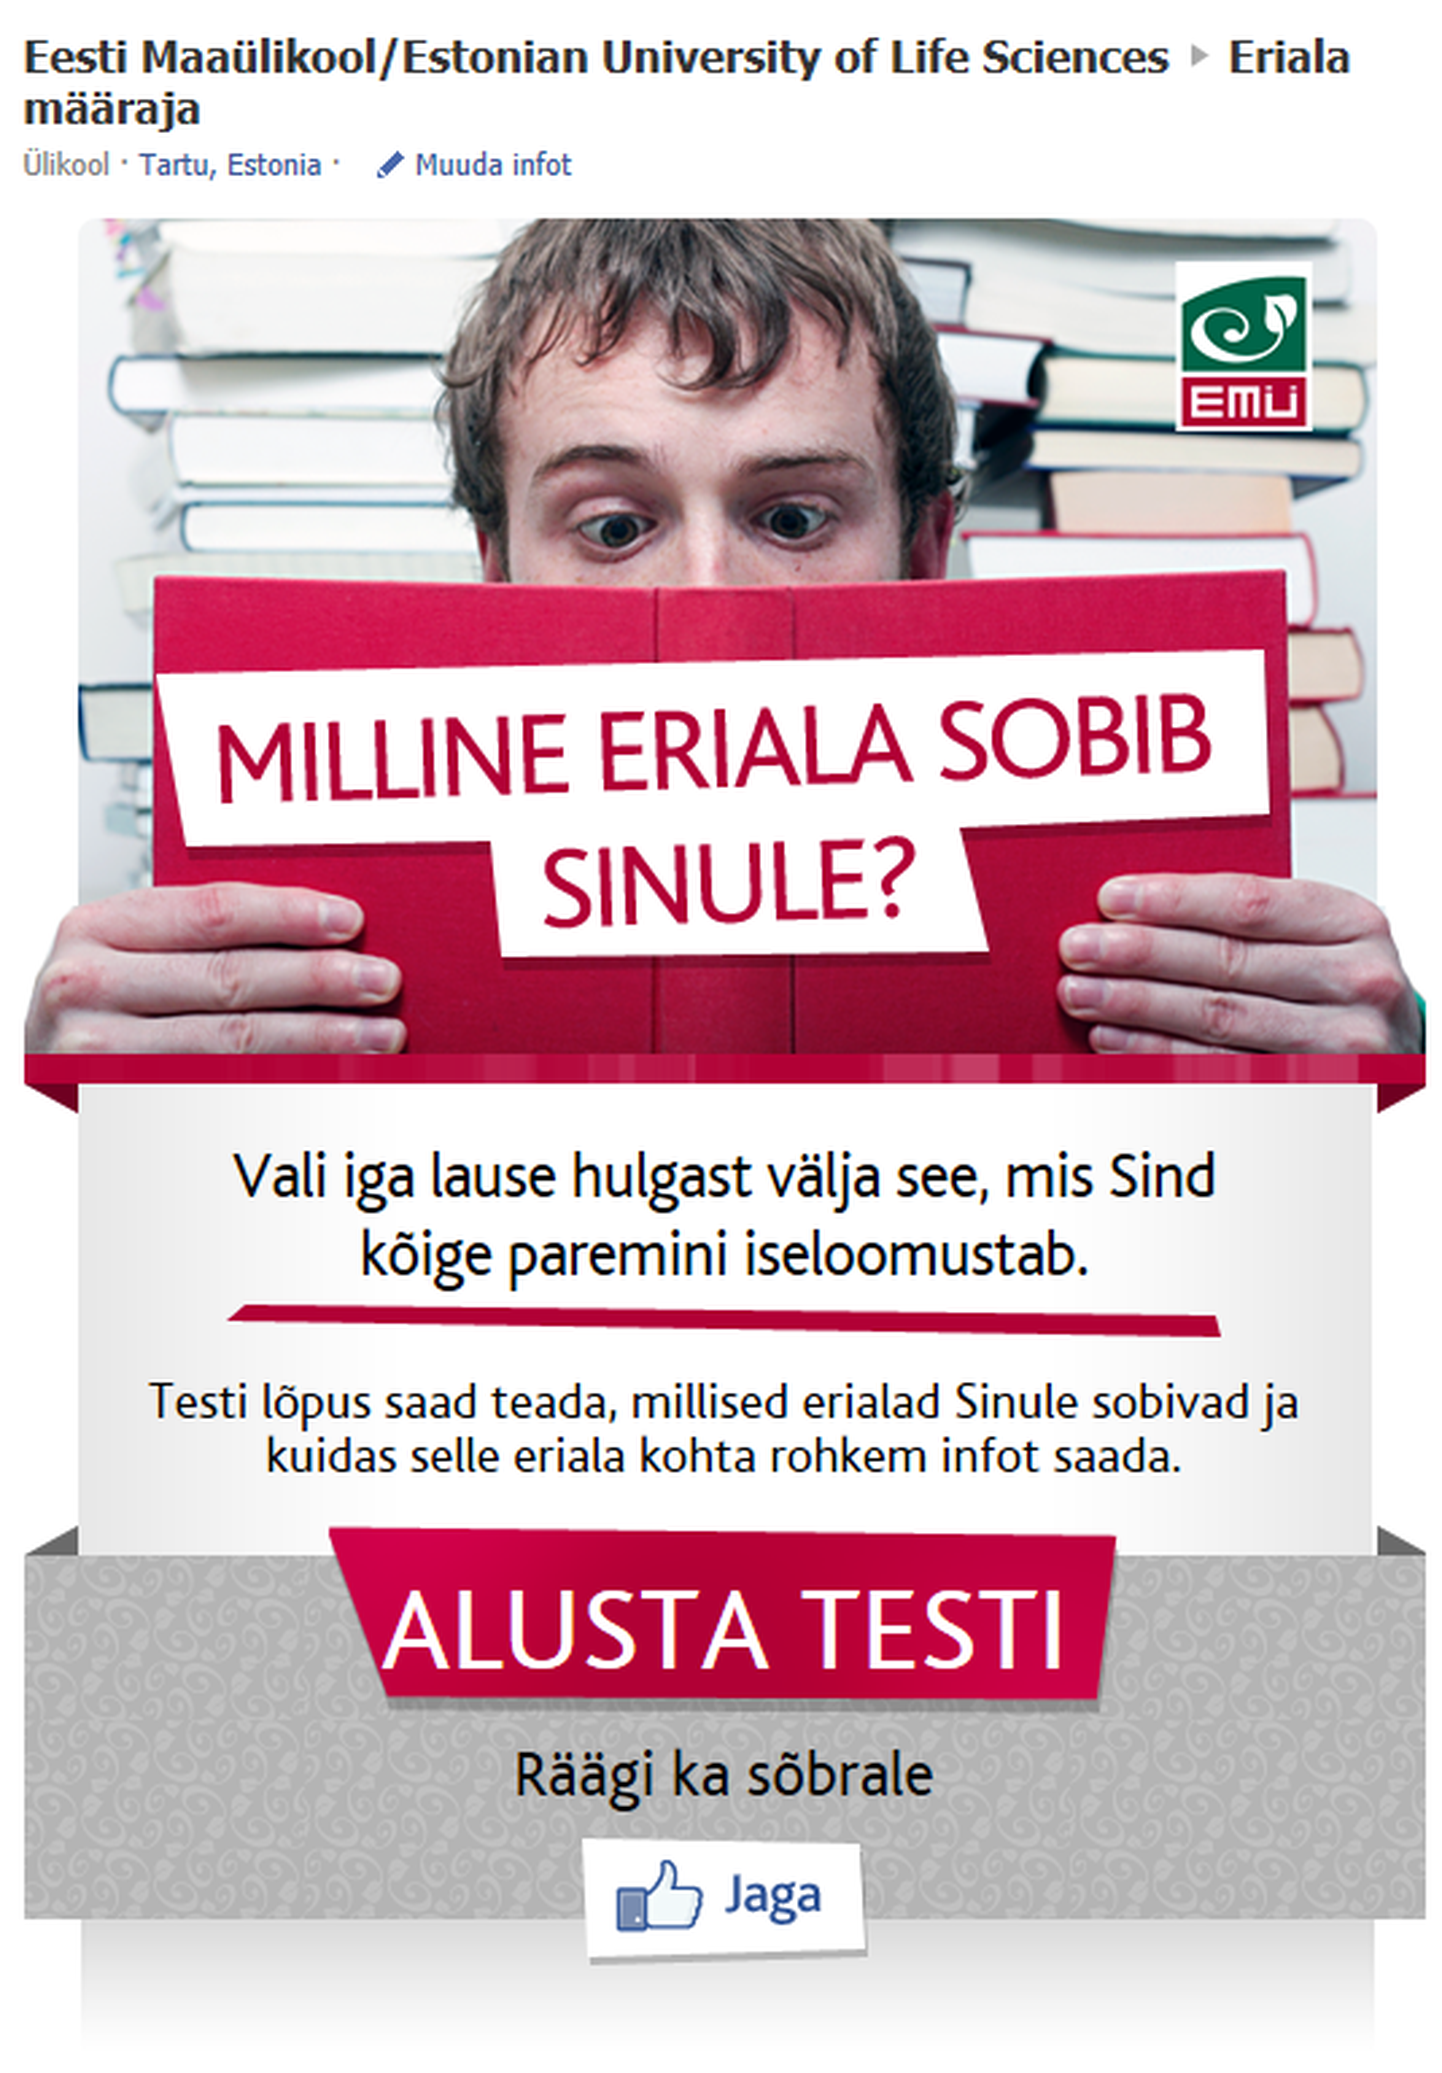 Eesti Maaülikooli reklaam ja erialatest Facebookis.